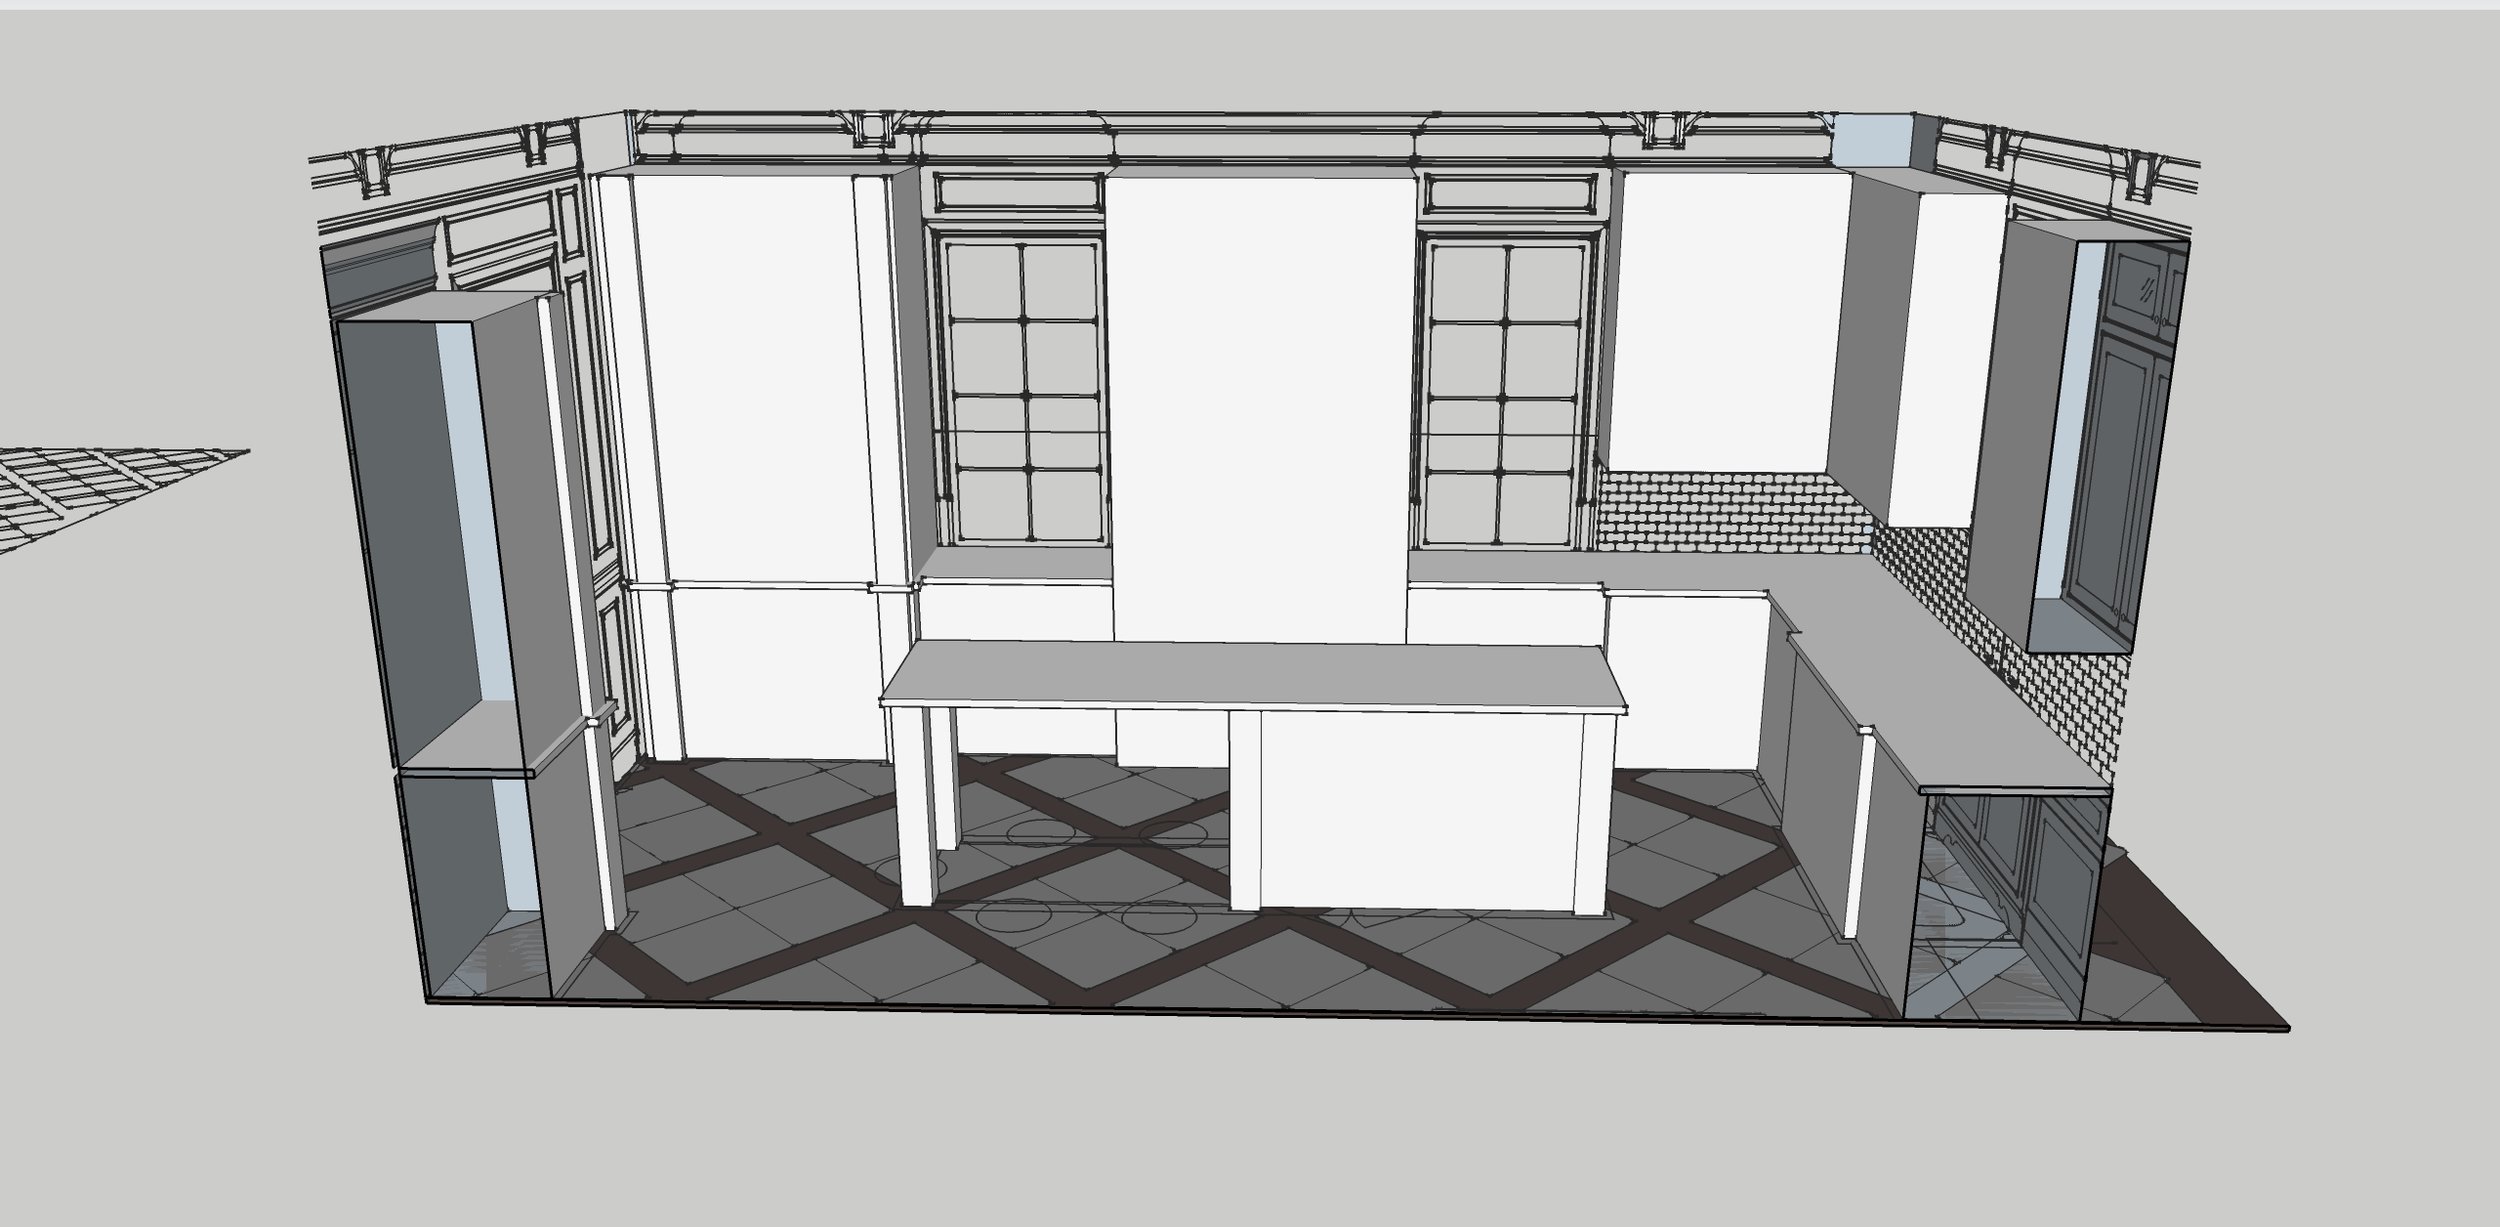 Davis_Kitchen_floor layout_Section 2.jpg